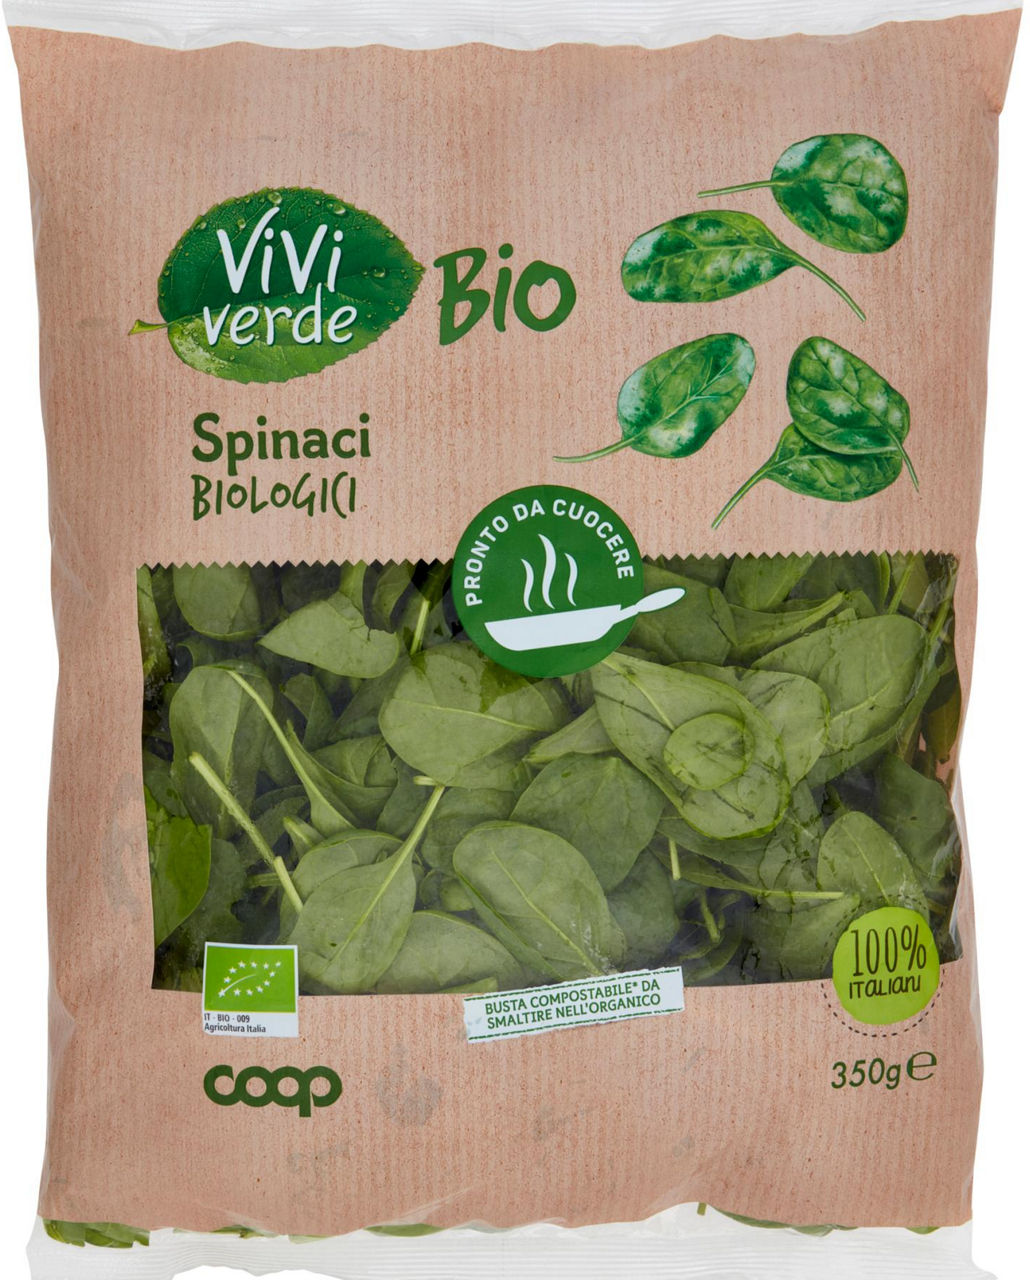 Spinaci vivi verde bio coop bs g 350